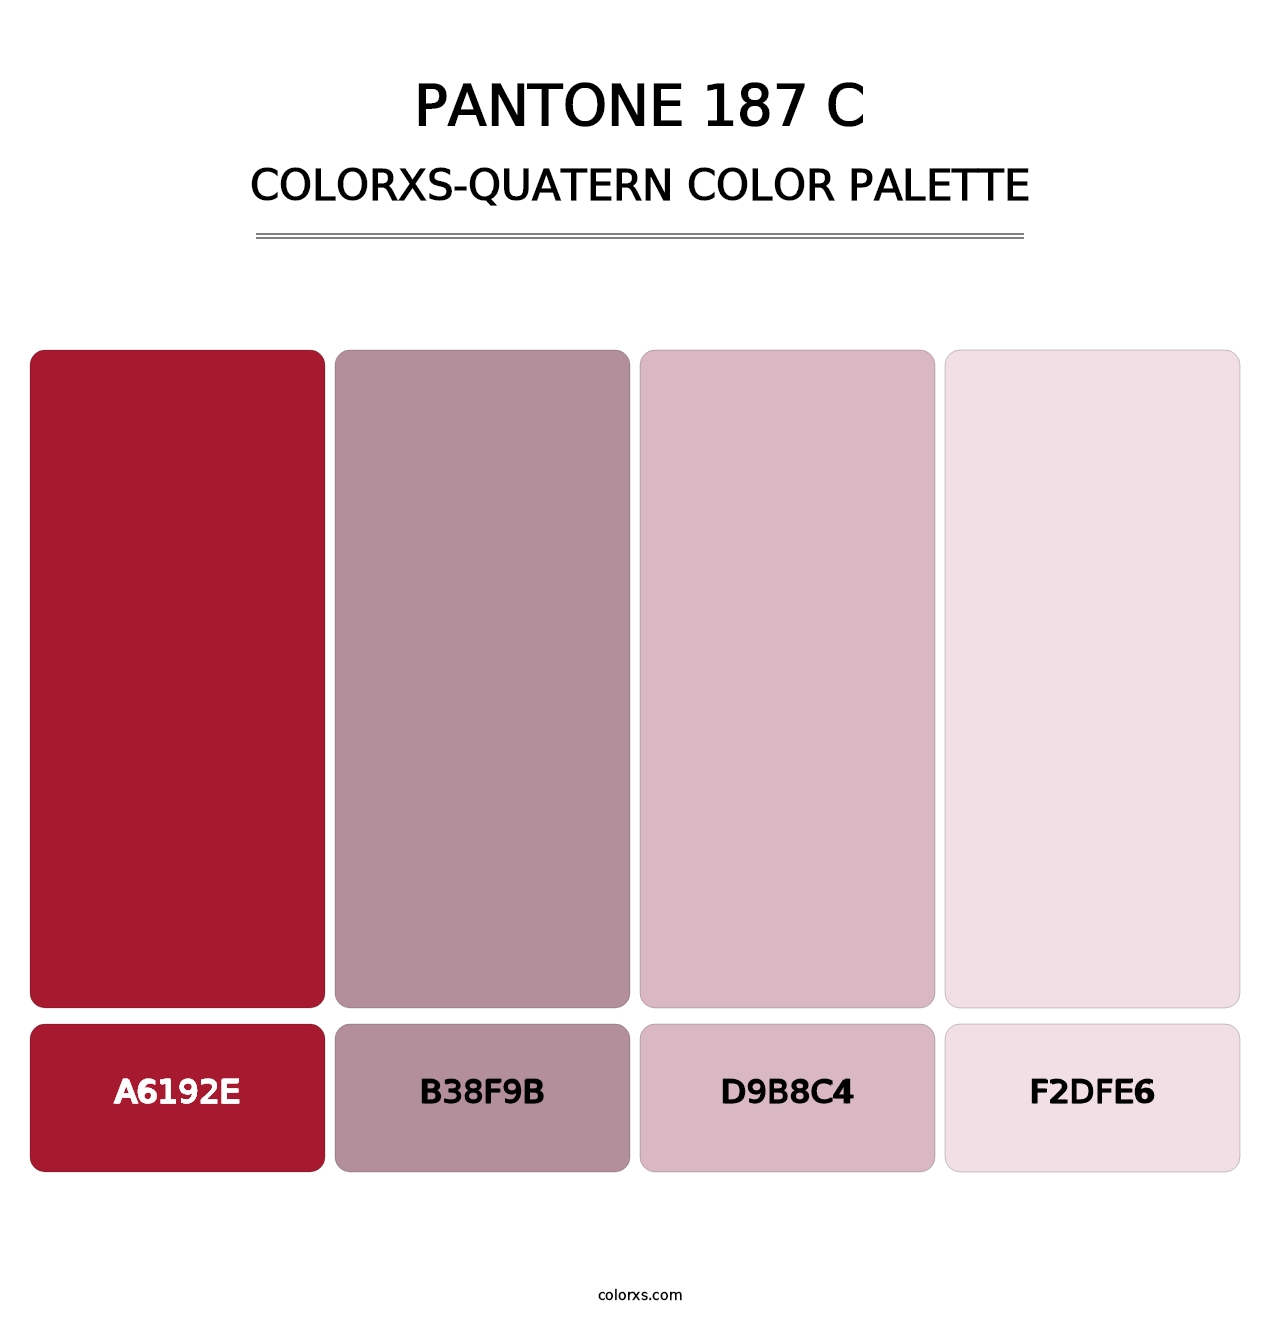 PANTONE 187 C - Colorxs Quatern Palette